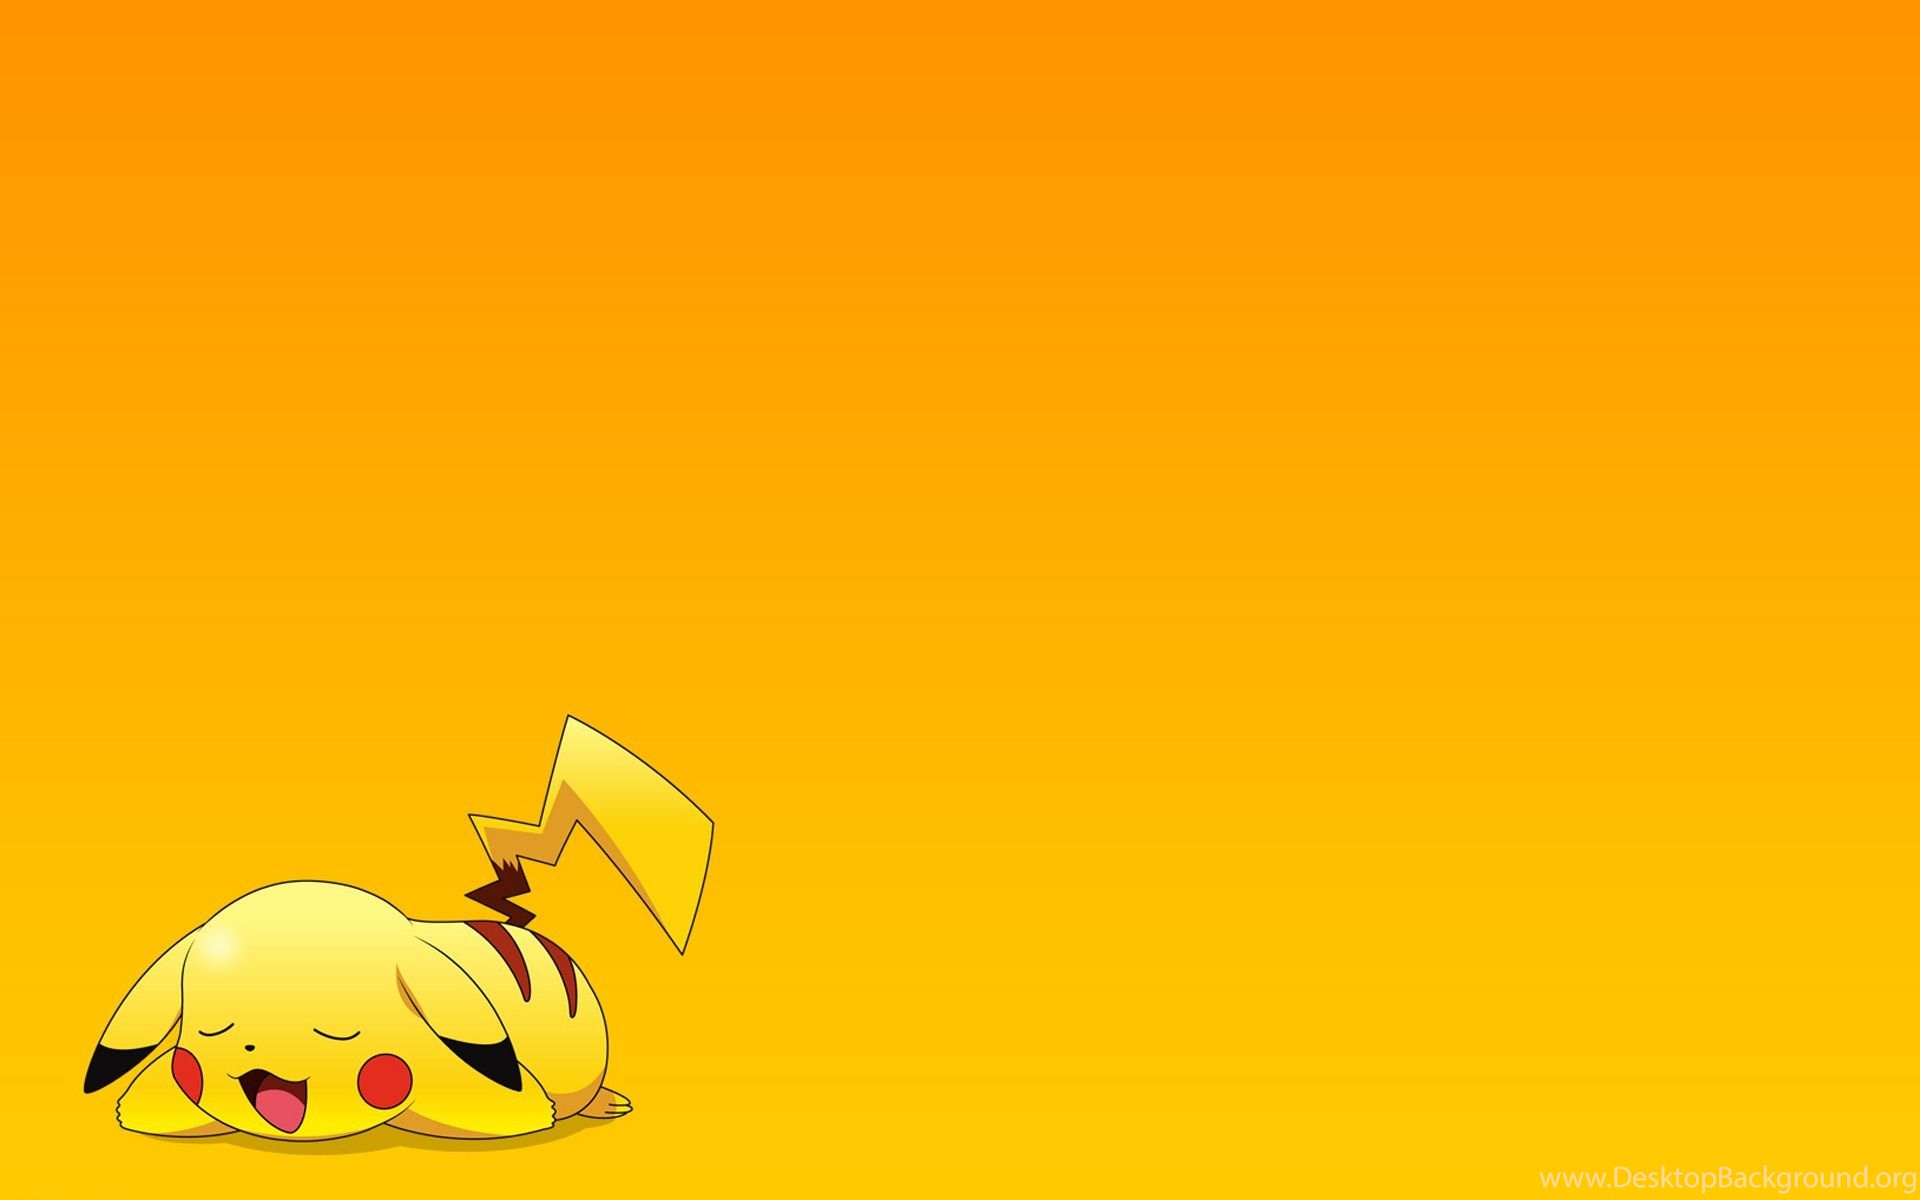 HD Wallpaper Cute Pokemon Wallpaper Image Desktop Background